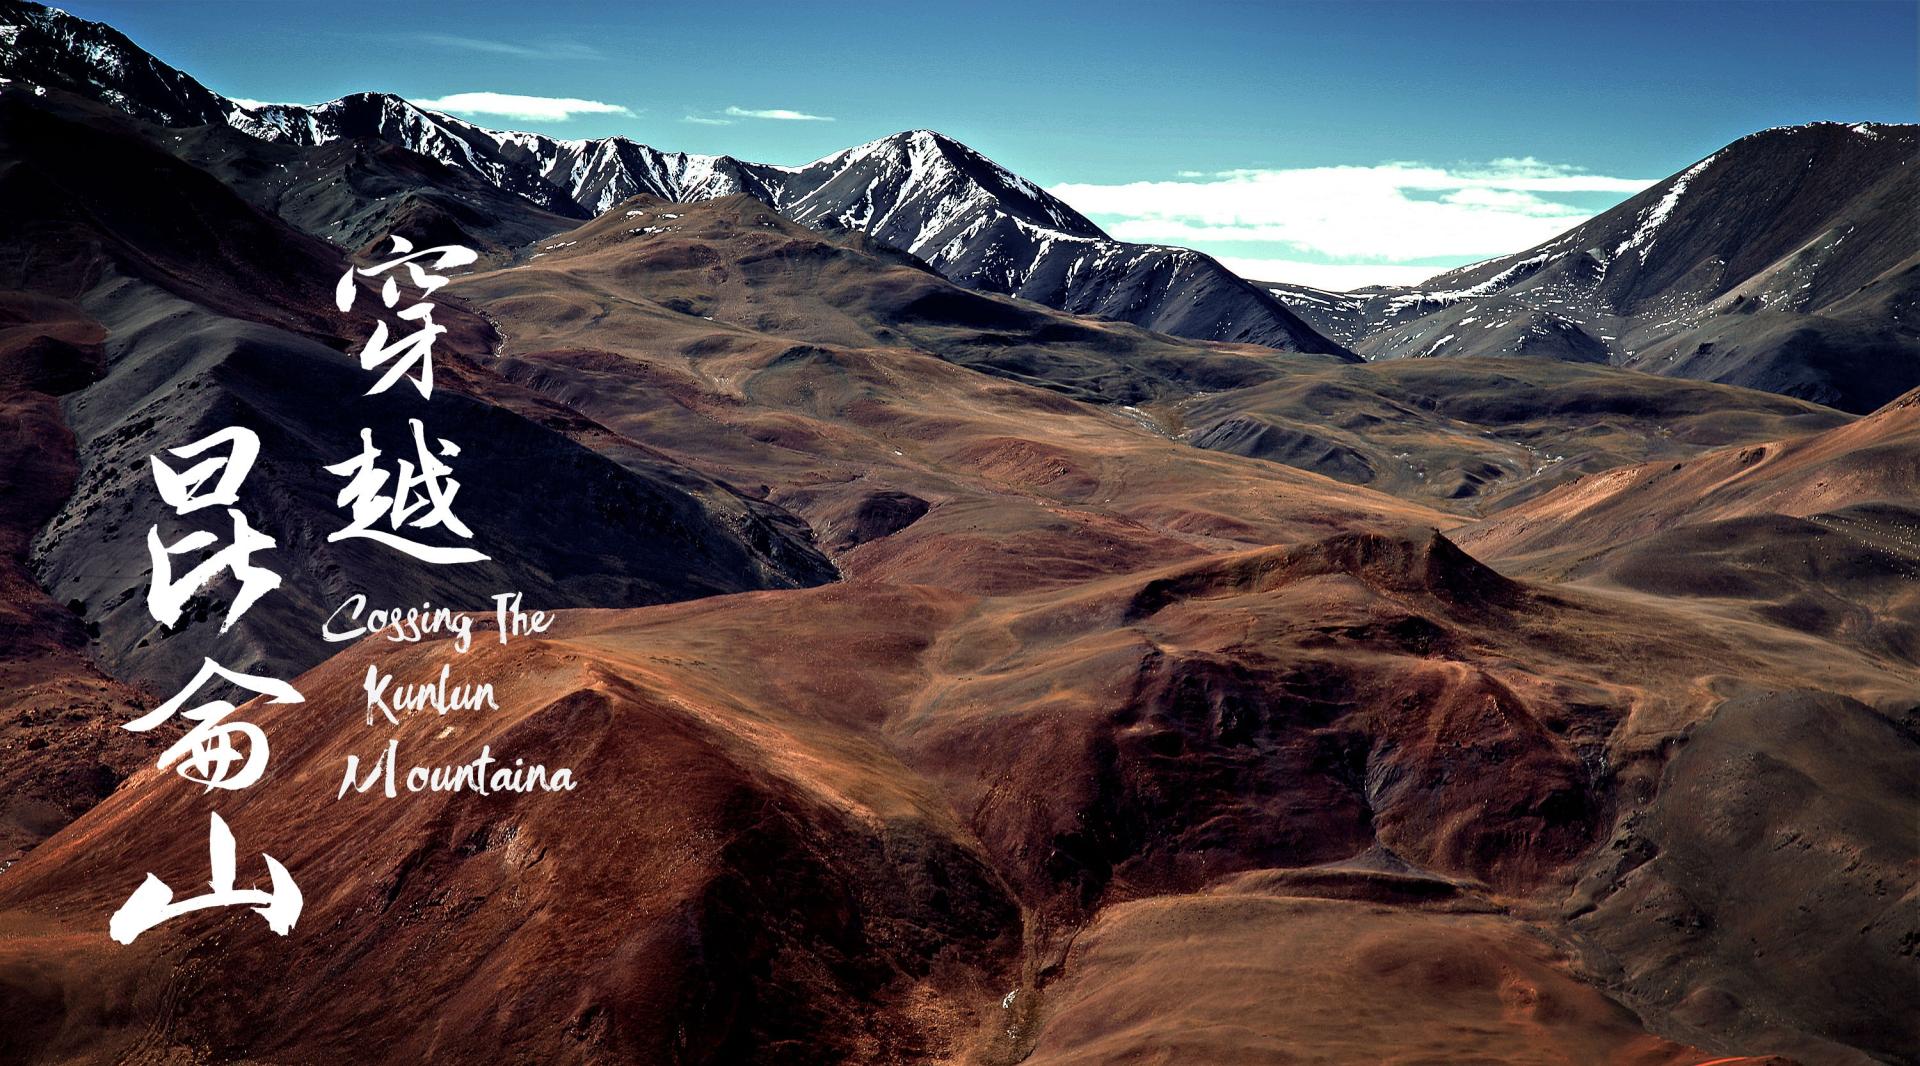 穿越昆仑山——从西藏到新疆